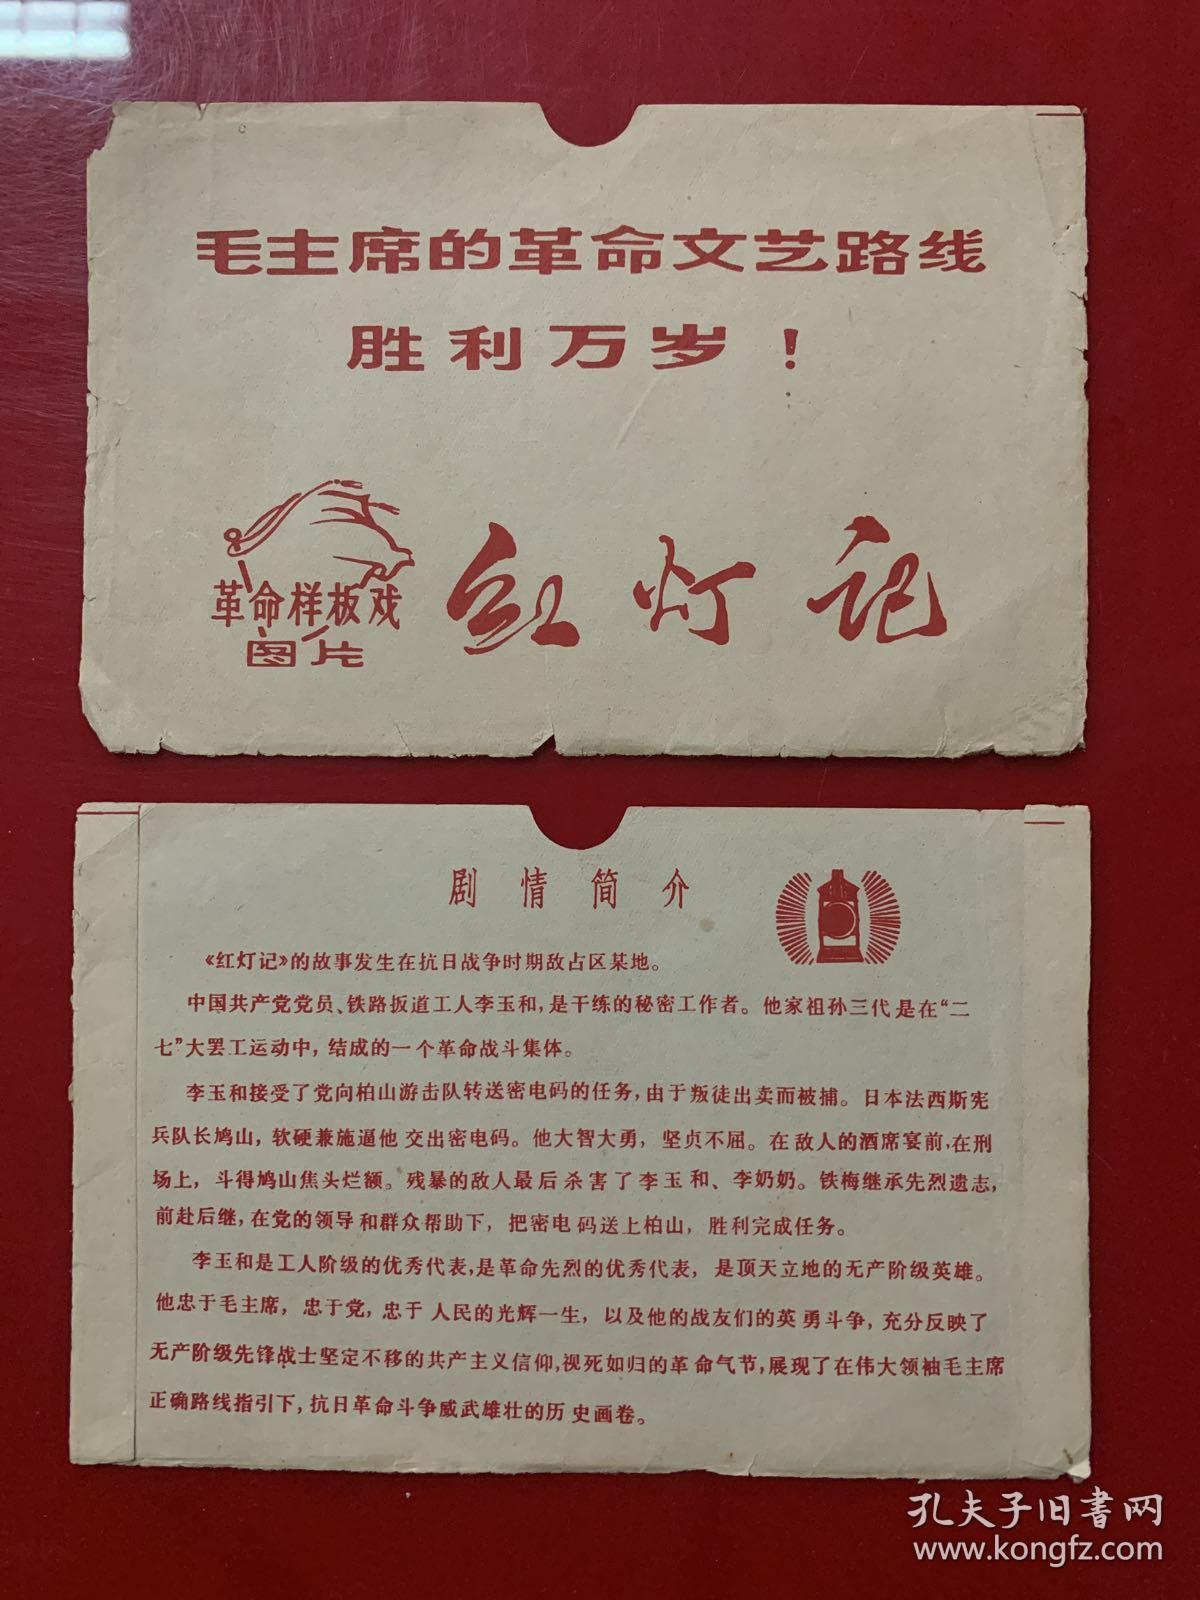 明信片卡片：毛主席的革命文艺路线胜利万岁！ 革命样板戏图片 红灯记（封套裂开）10张